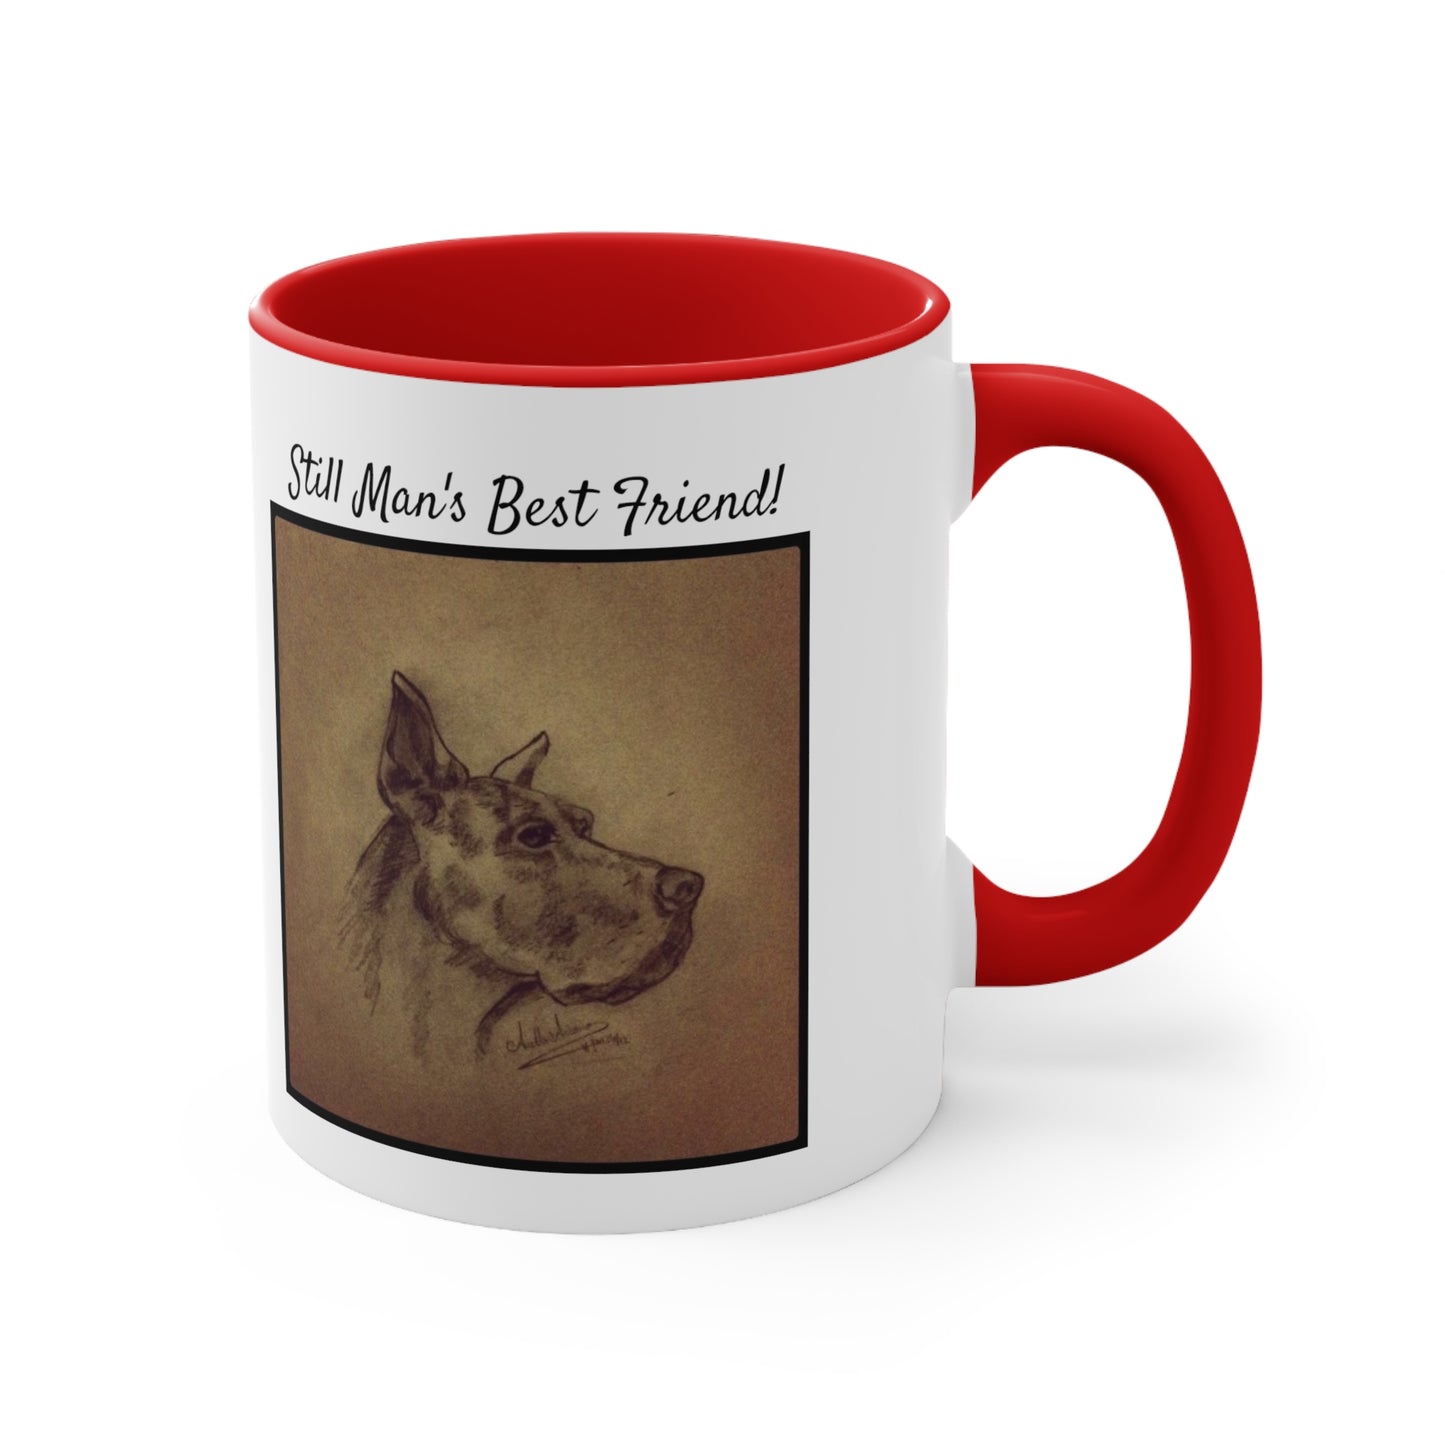 Man's Best Friend Accent Color Coffee Mug, 11oz